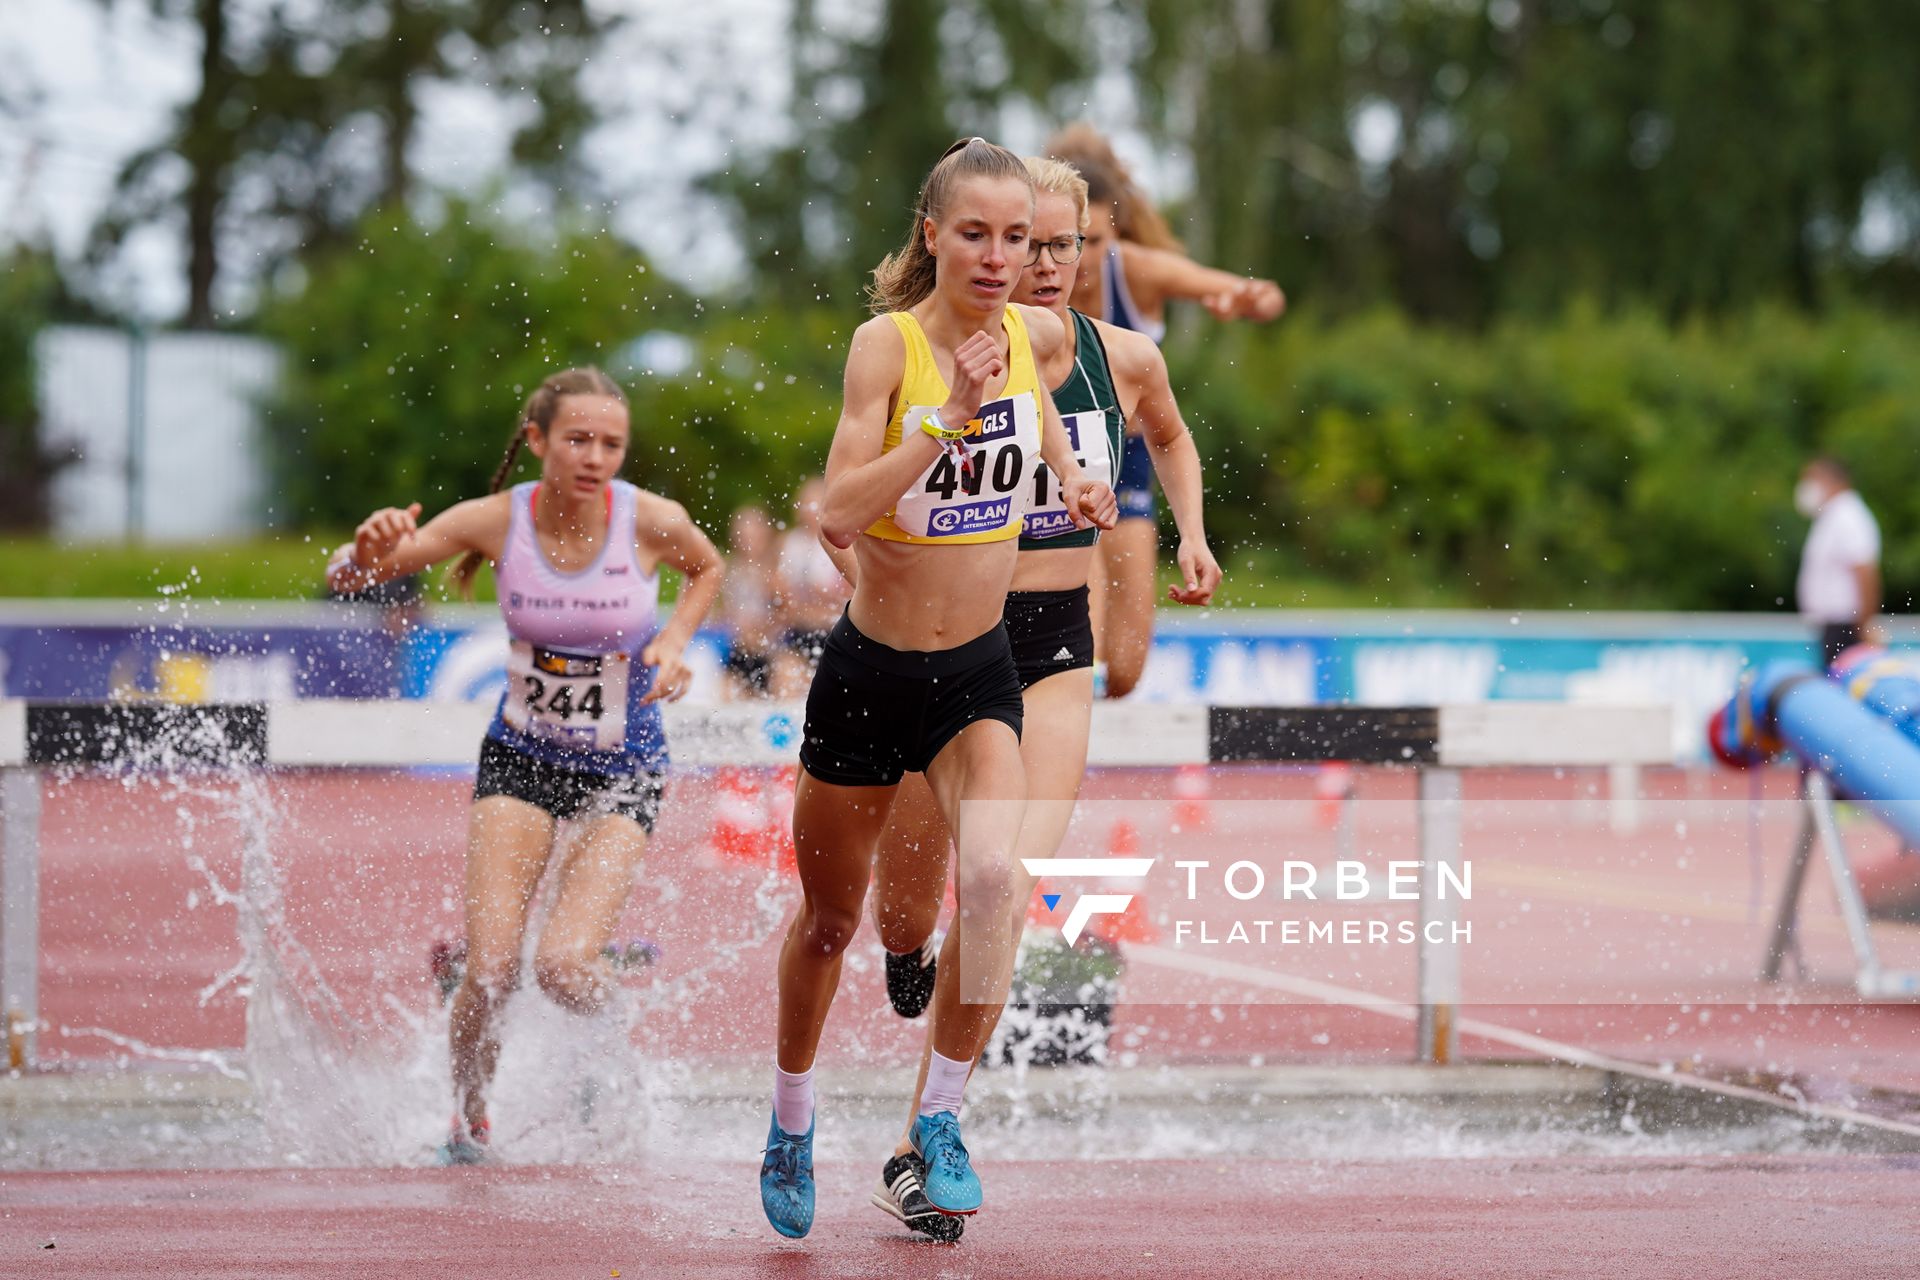 Sonja Lindemann (LG Wedel-Pinneberg) am 01.08.2021 waehrend den deutschen Leichtathletik-Jugendmeisterschaften 2021 in Rostock (Tag 3)